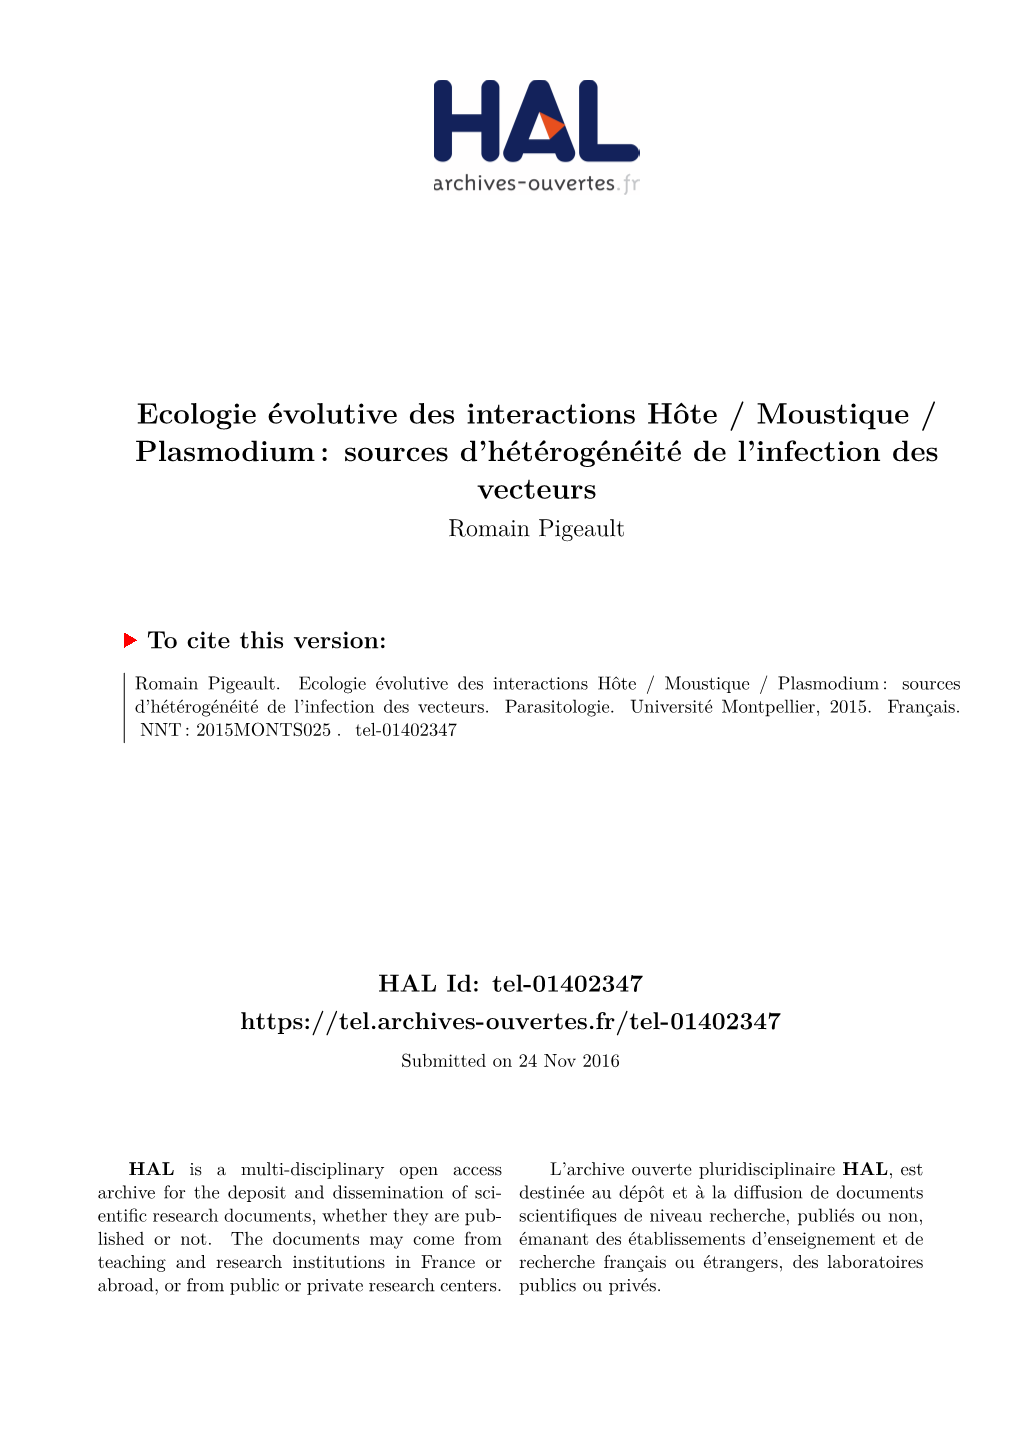 Ecologie Évolutive Des Interactions Hôte / Moustique / Plasmodium : Sources D’Hétérogénéité De L’Infection Des Vecteurs Romain Pigeault